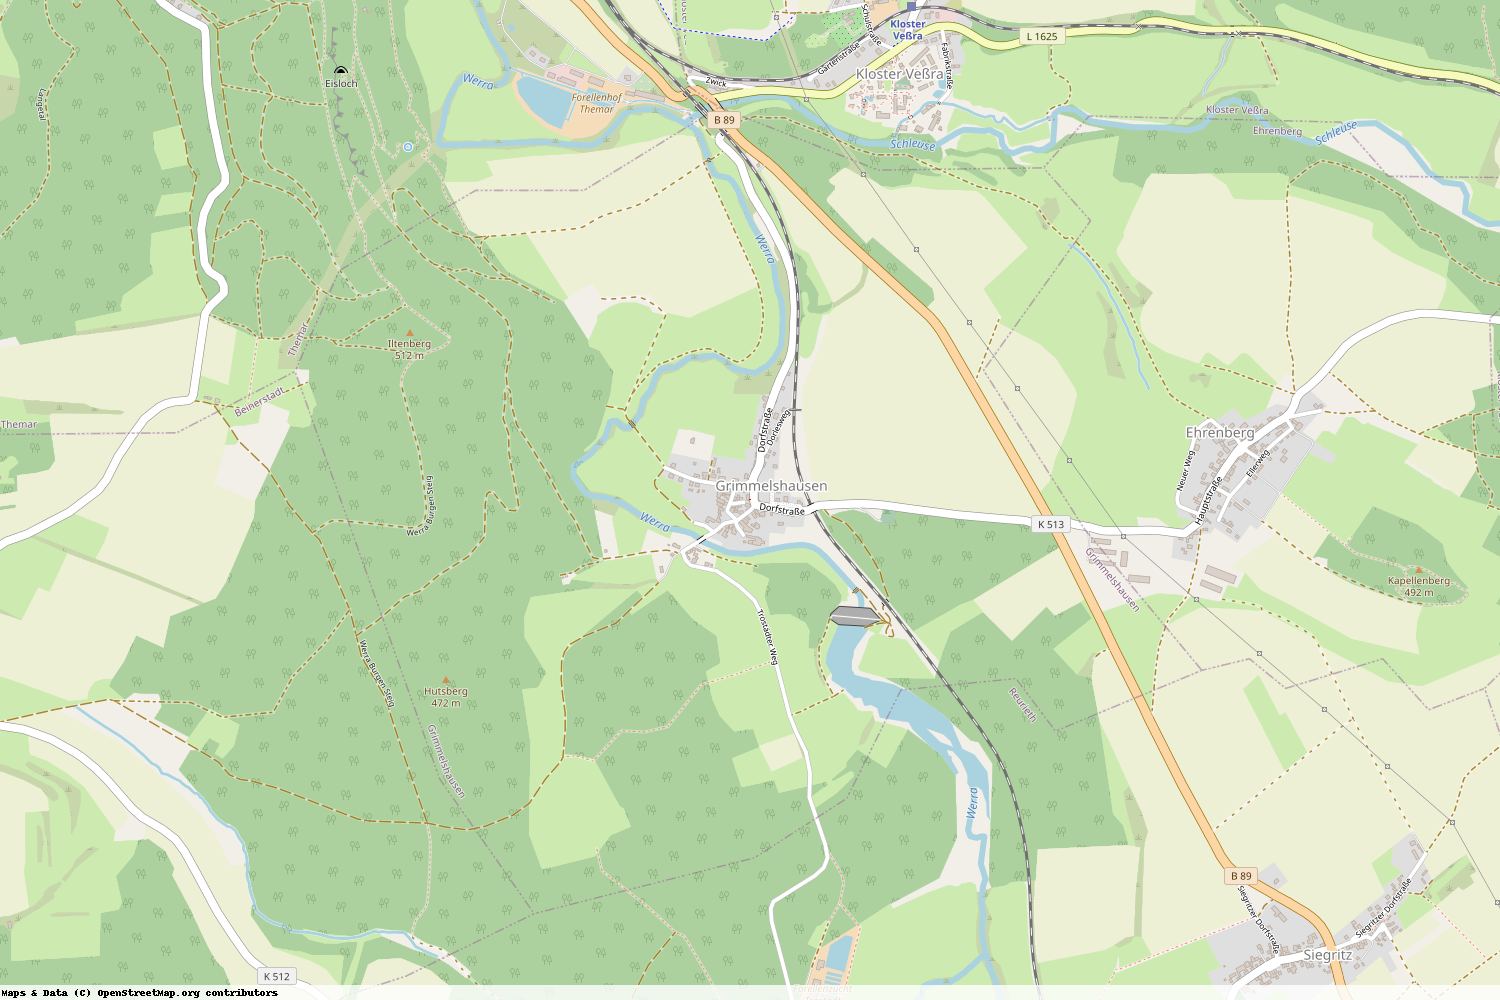 Ist gerade Stromausfall in Thüringen - Hildburghausen - Grimmelshausen?